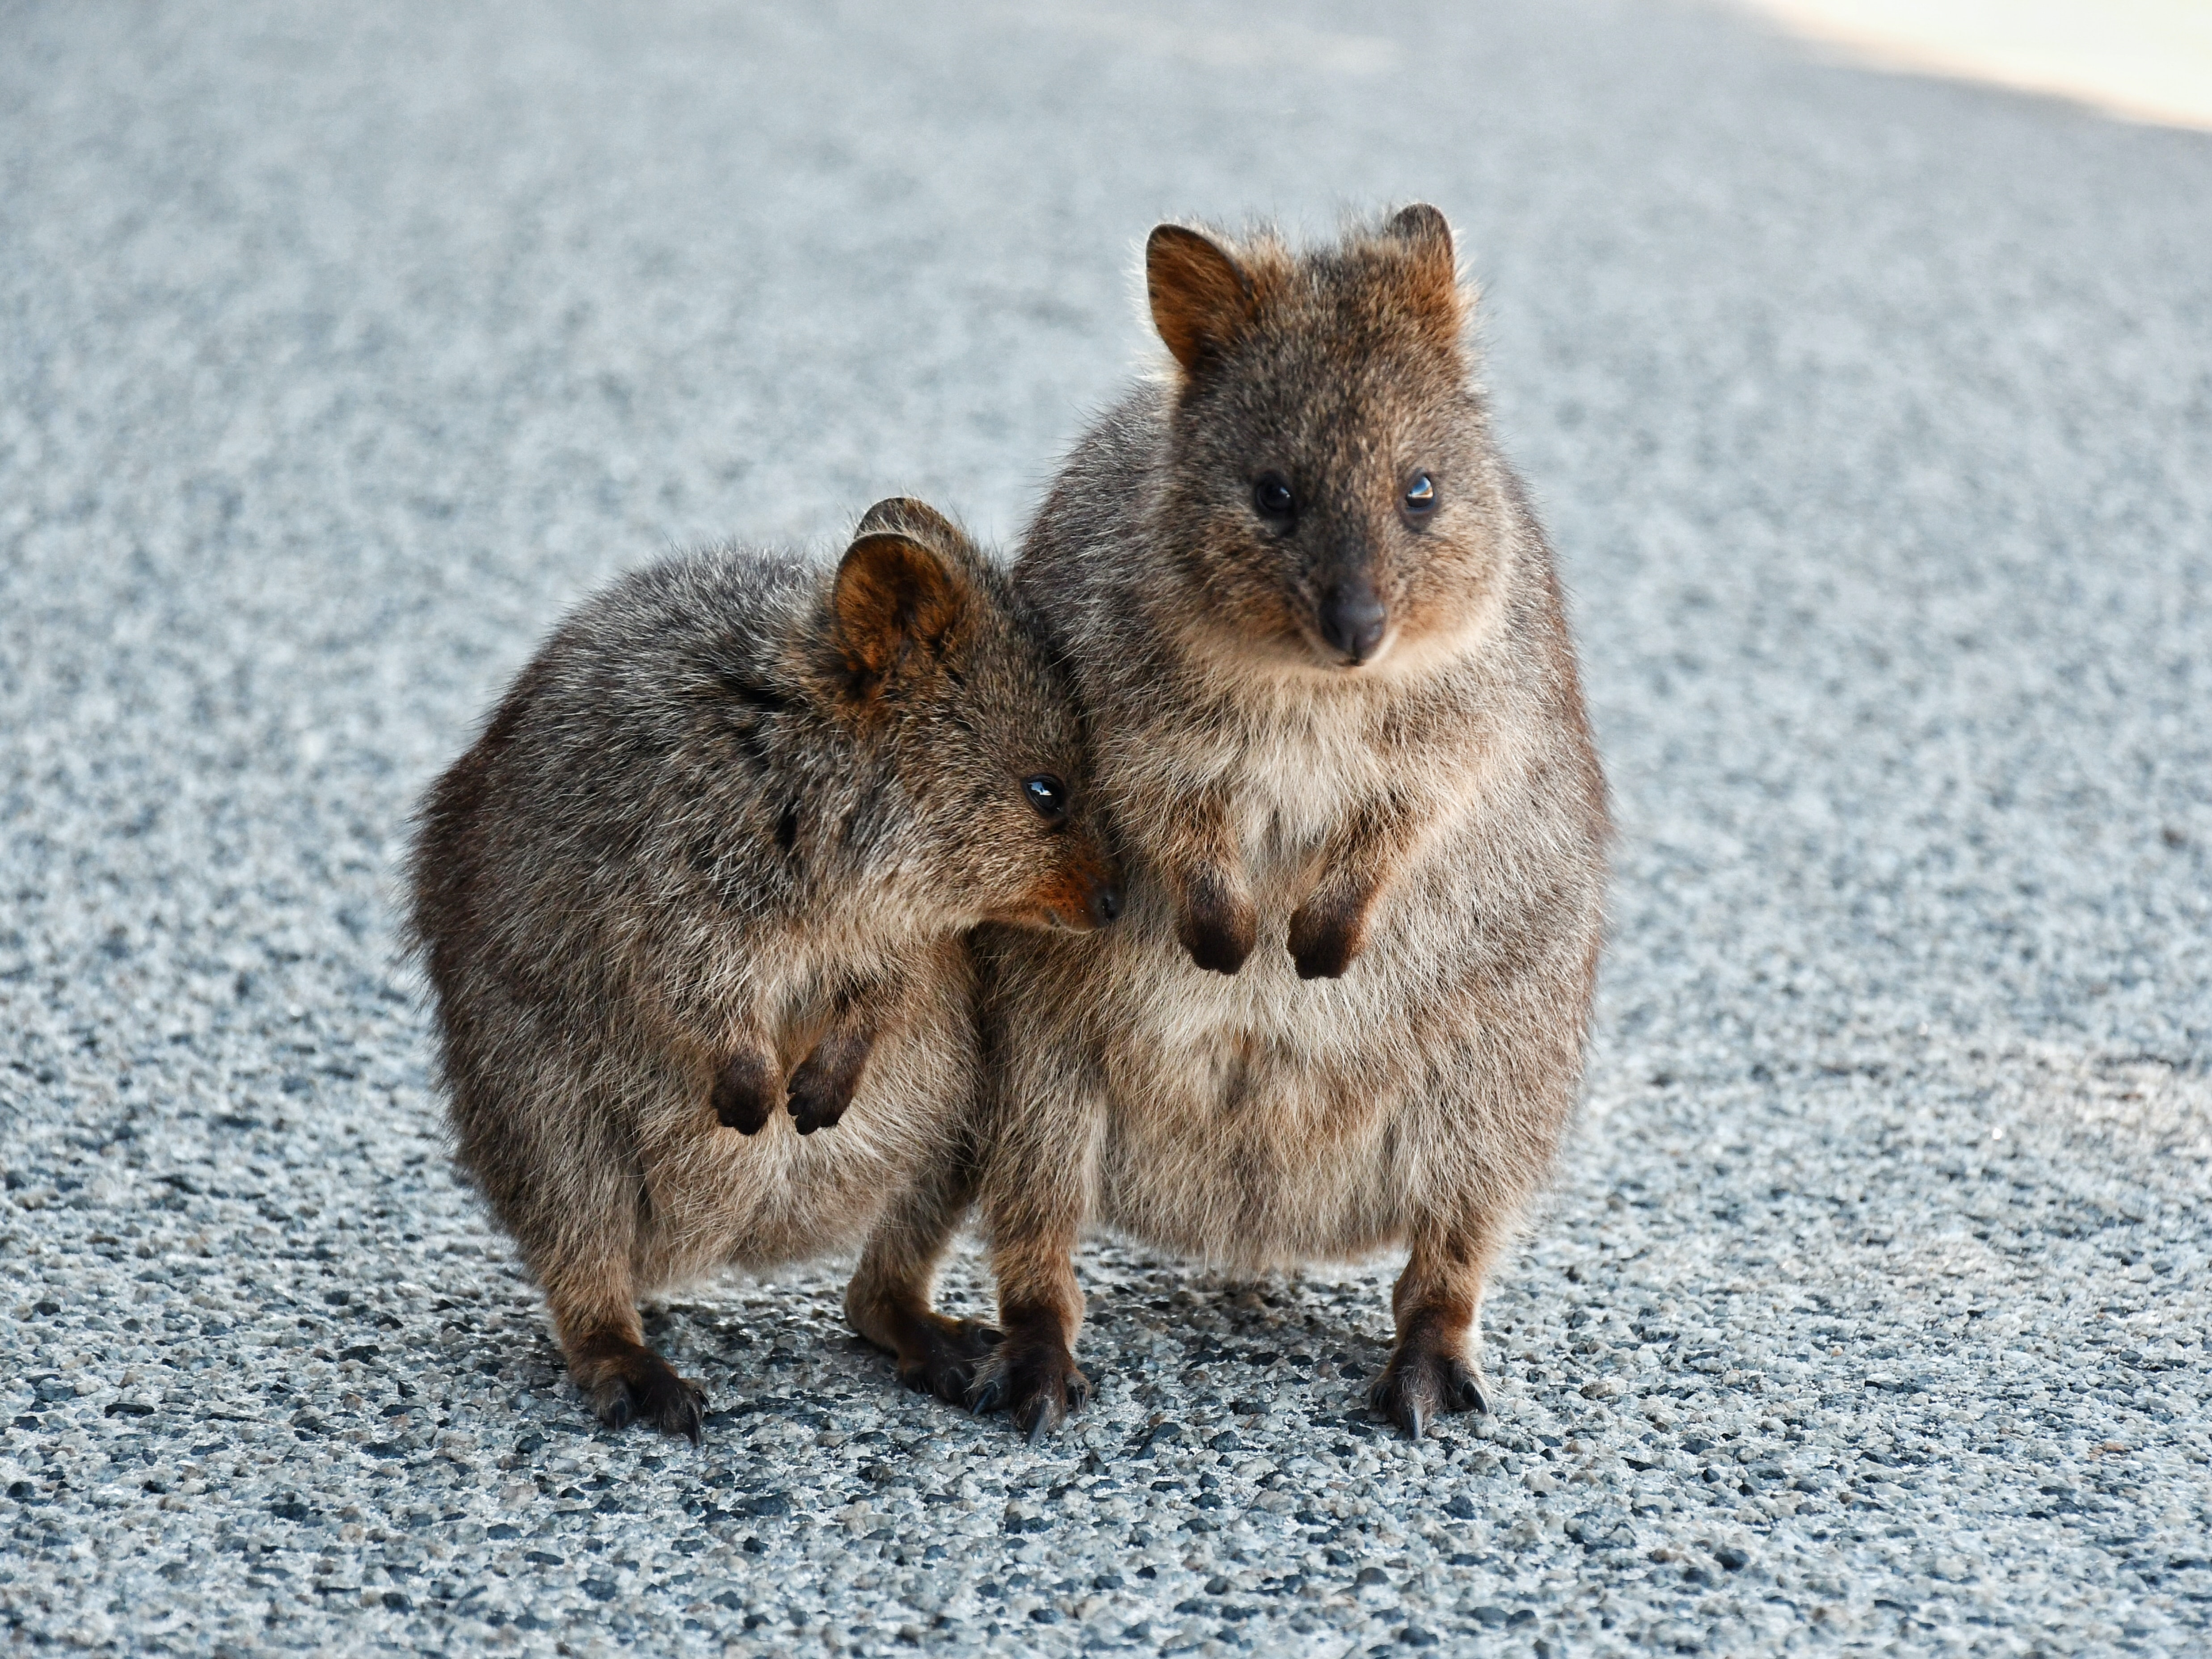 世界一幸せな動物「クォッカ」とは？上手に写真を撮るコツも解説 HISオーストラリア